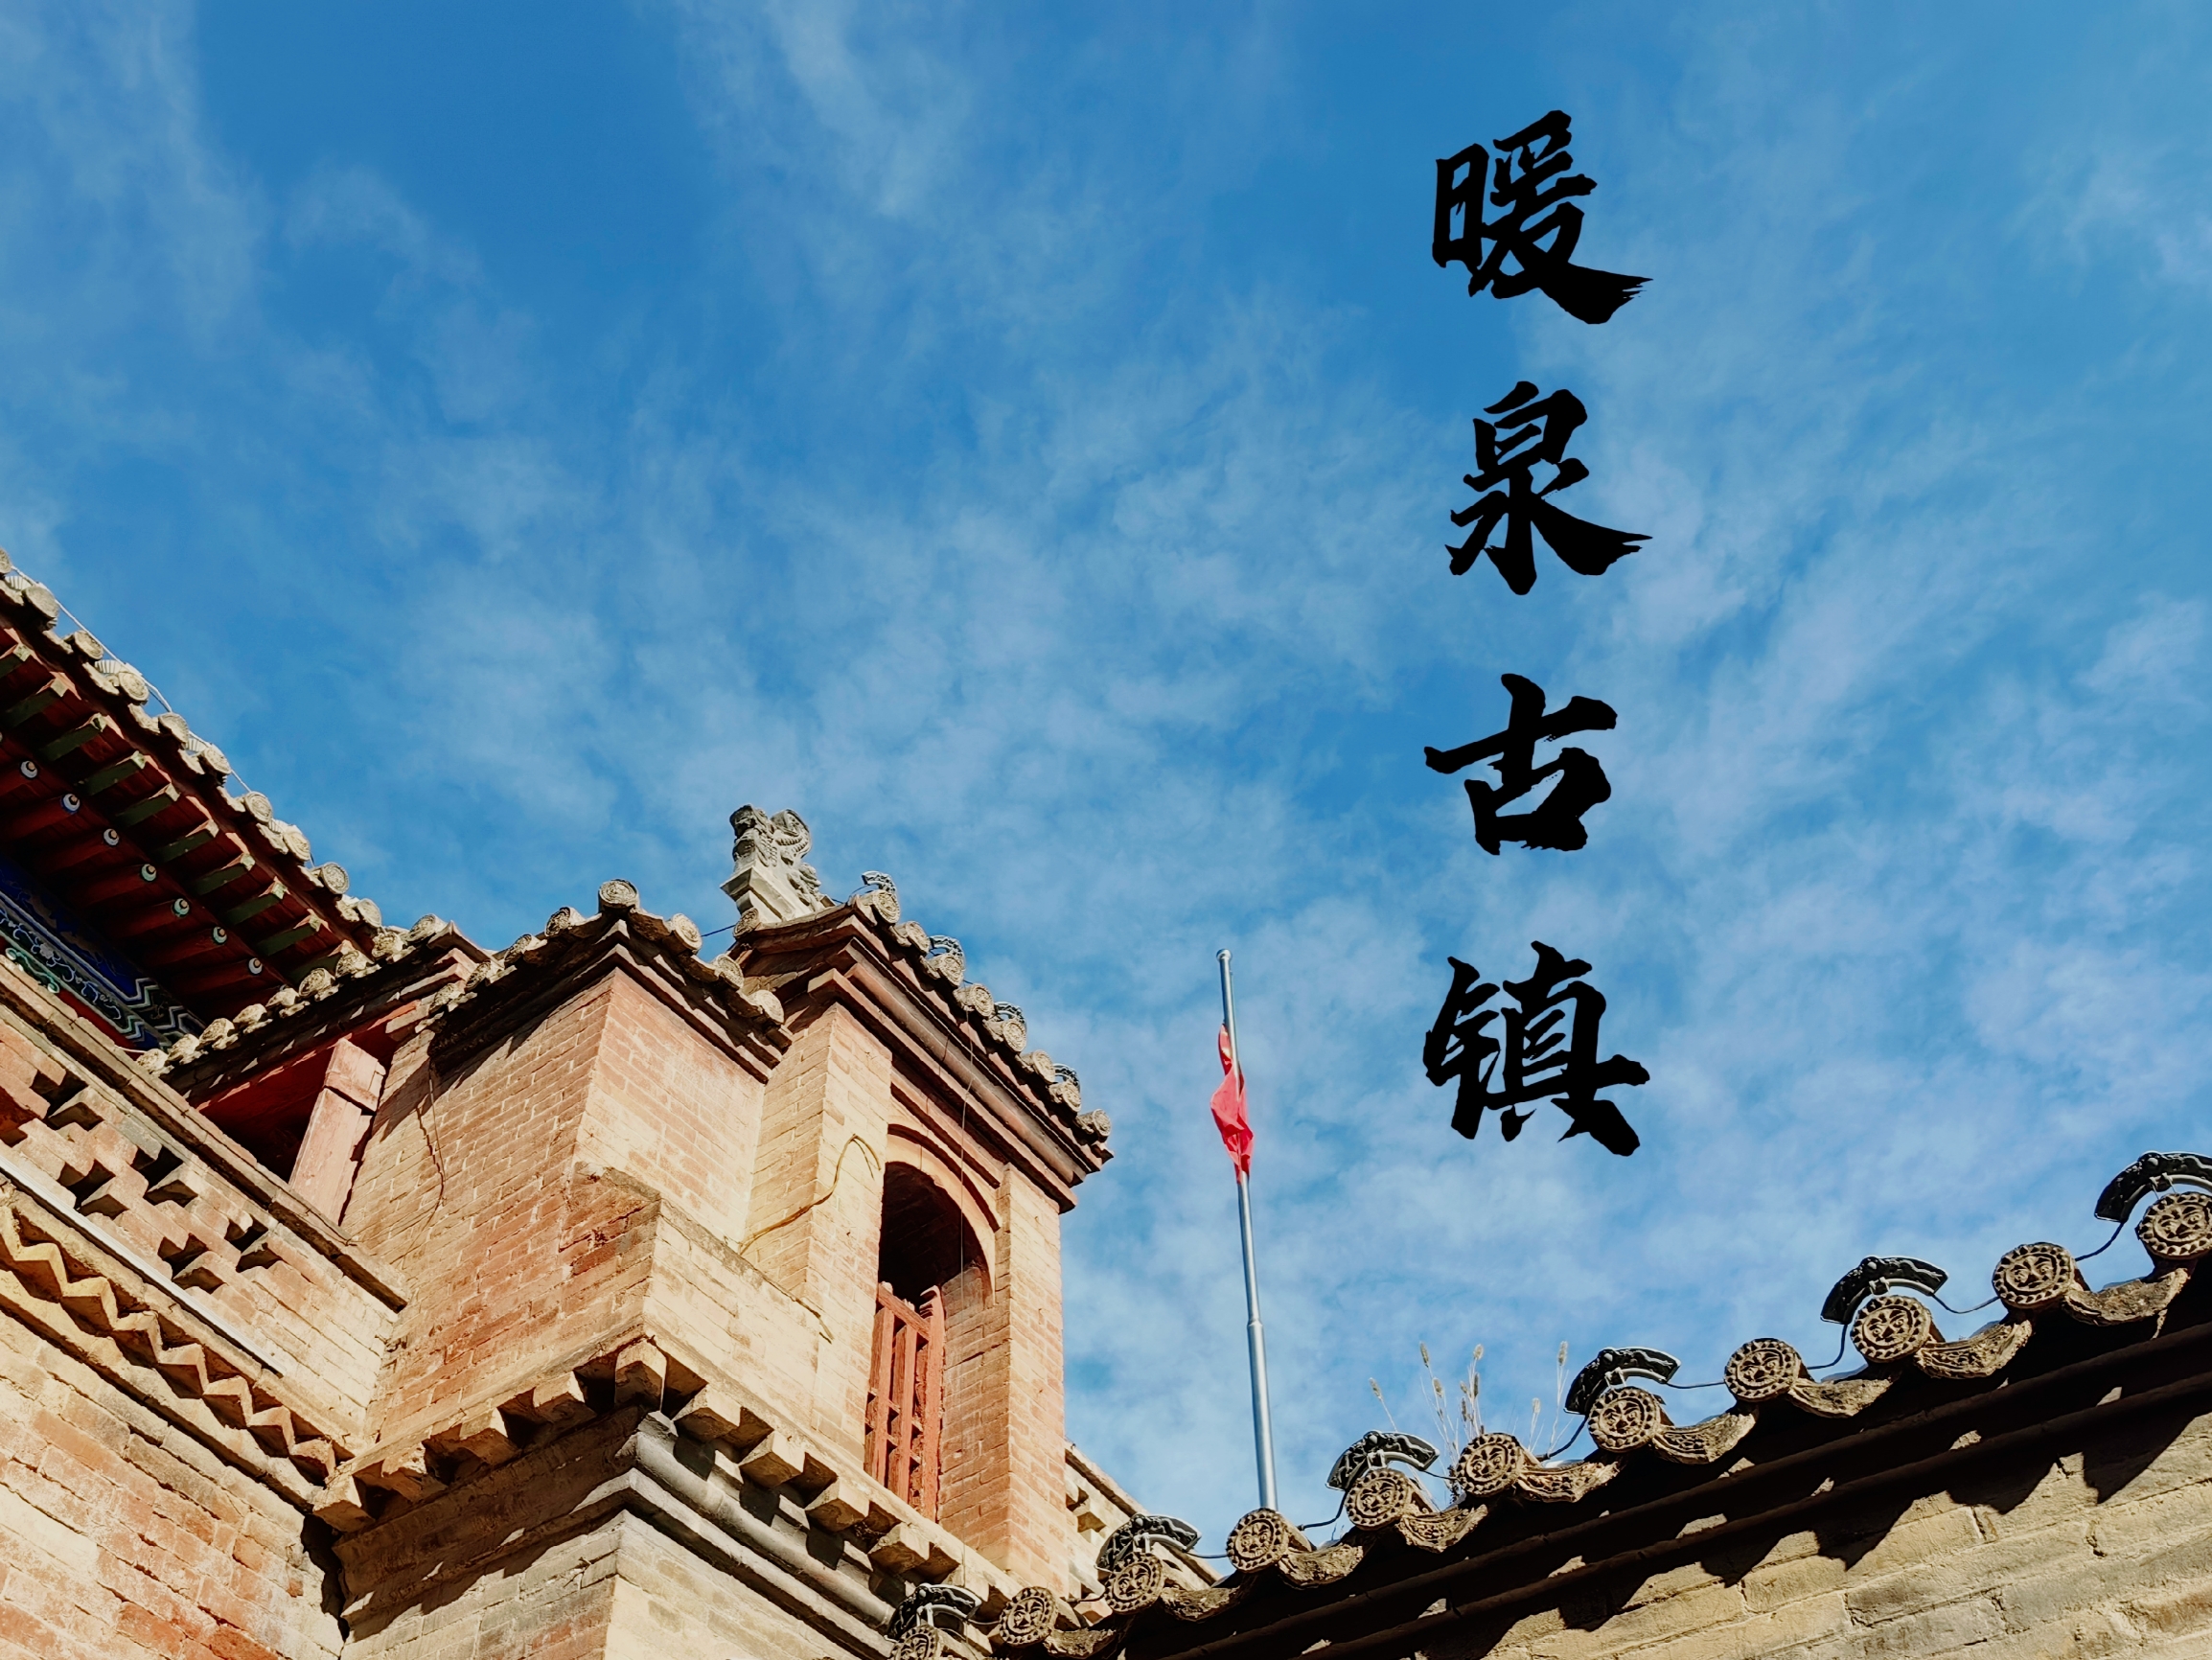 作为燕云十六州之一的蔚县，古堡、古镇等文物古迹众多，同时打树花、剪纸等民俗遗产保留较多。前几年无意中